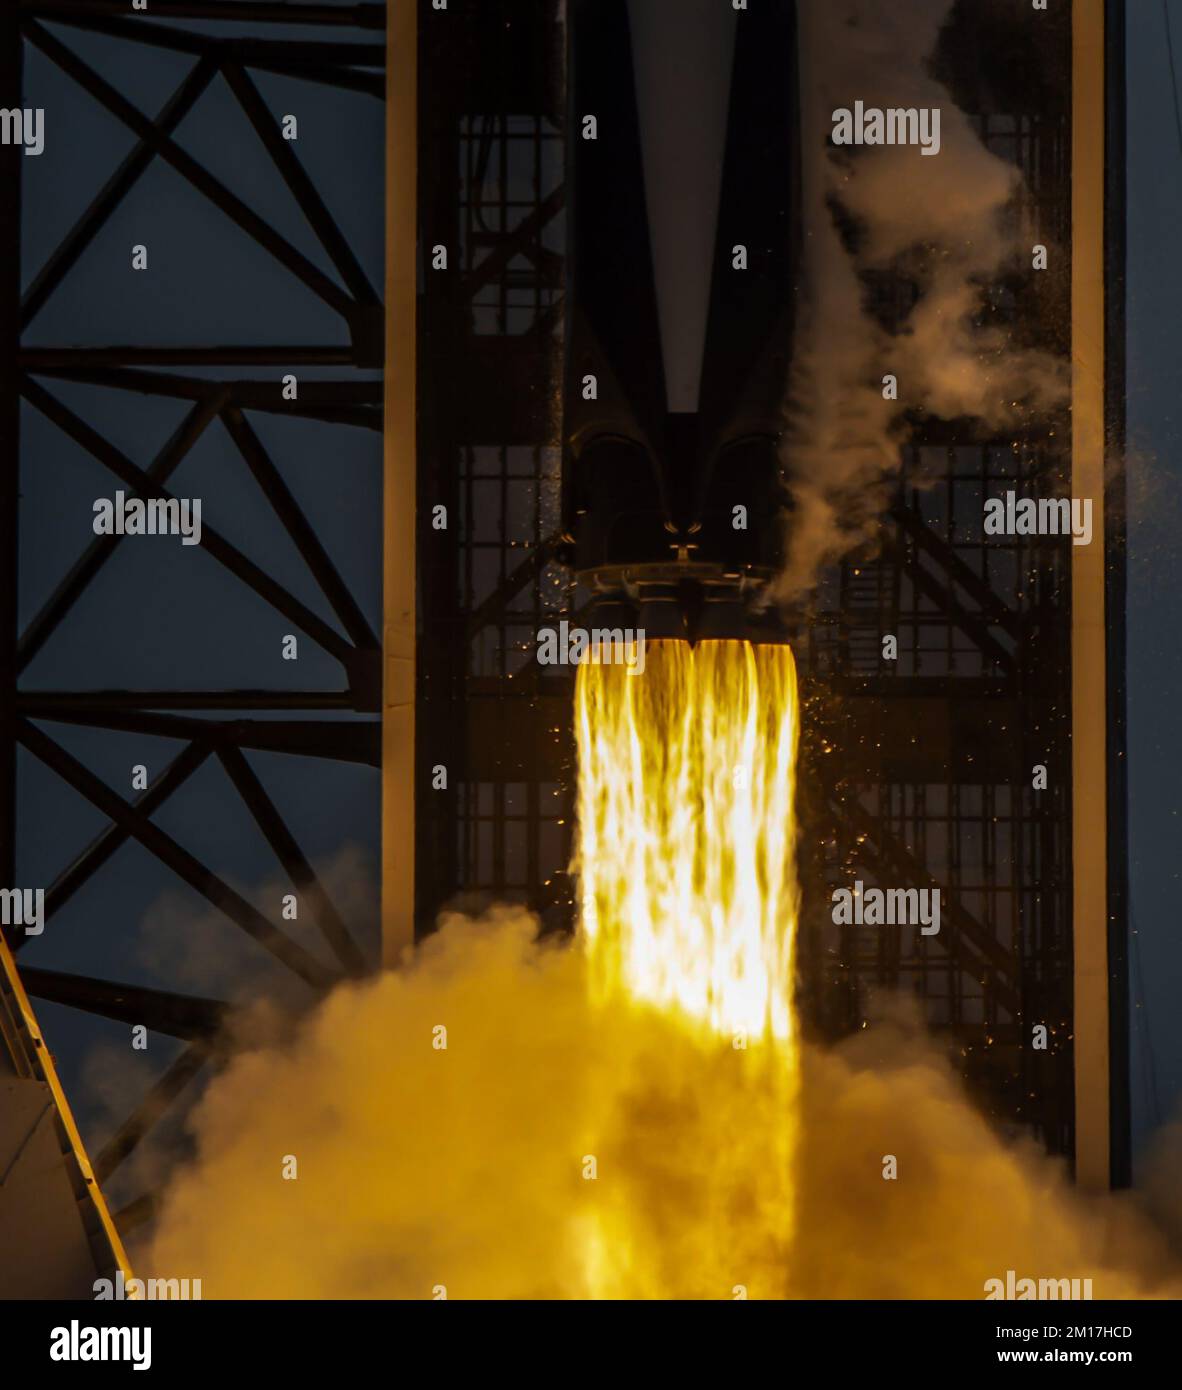 SpaceX-Rakete Falcon 9 startete auf die Flammen der Treibstoffe. Elemente dieses Bildes, bereitgestellt von der NASA. Stockfoto